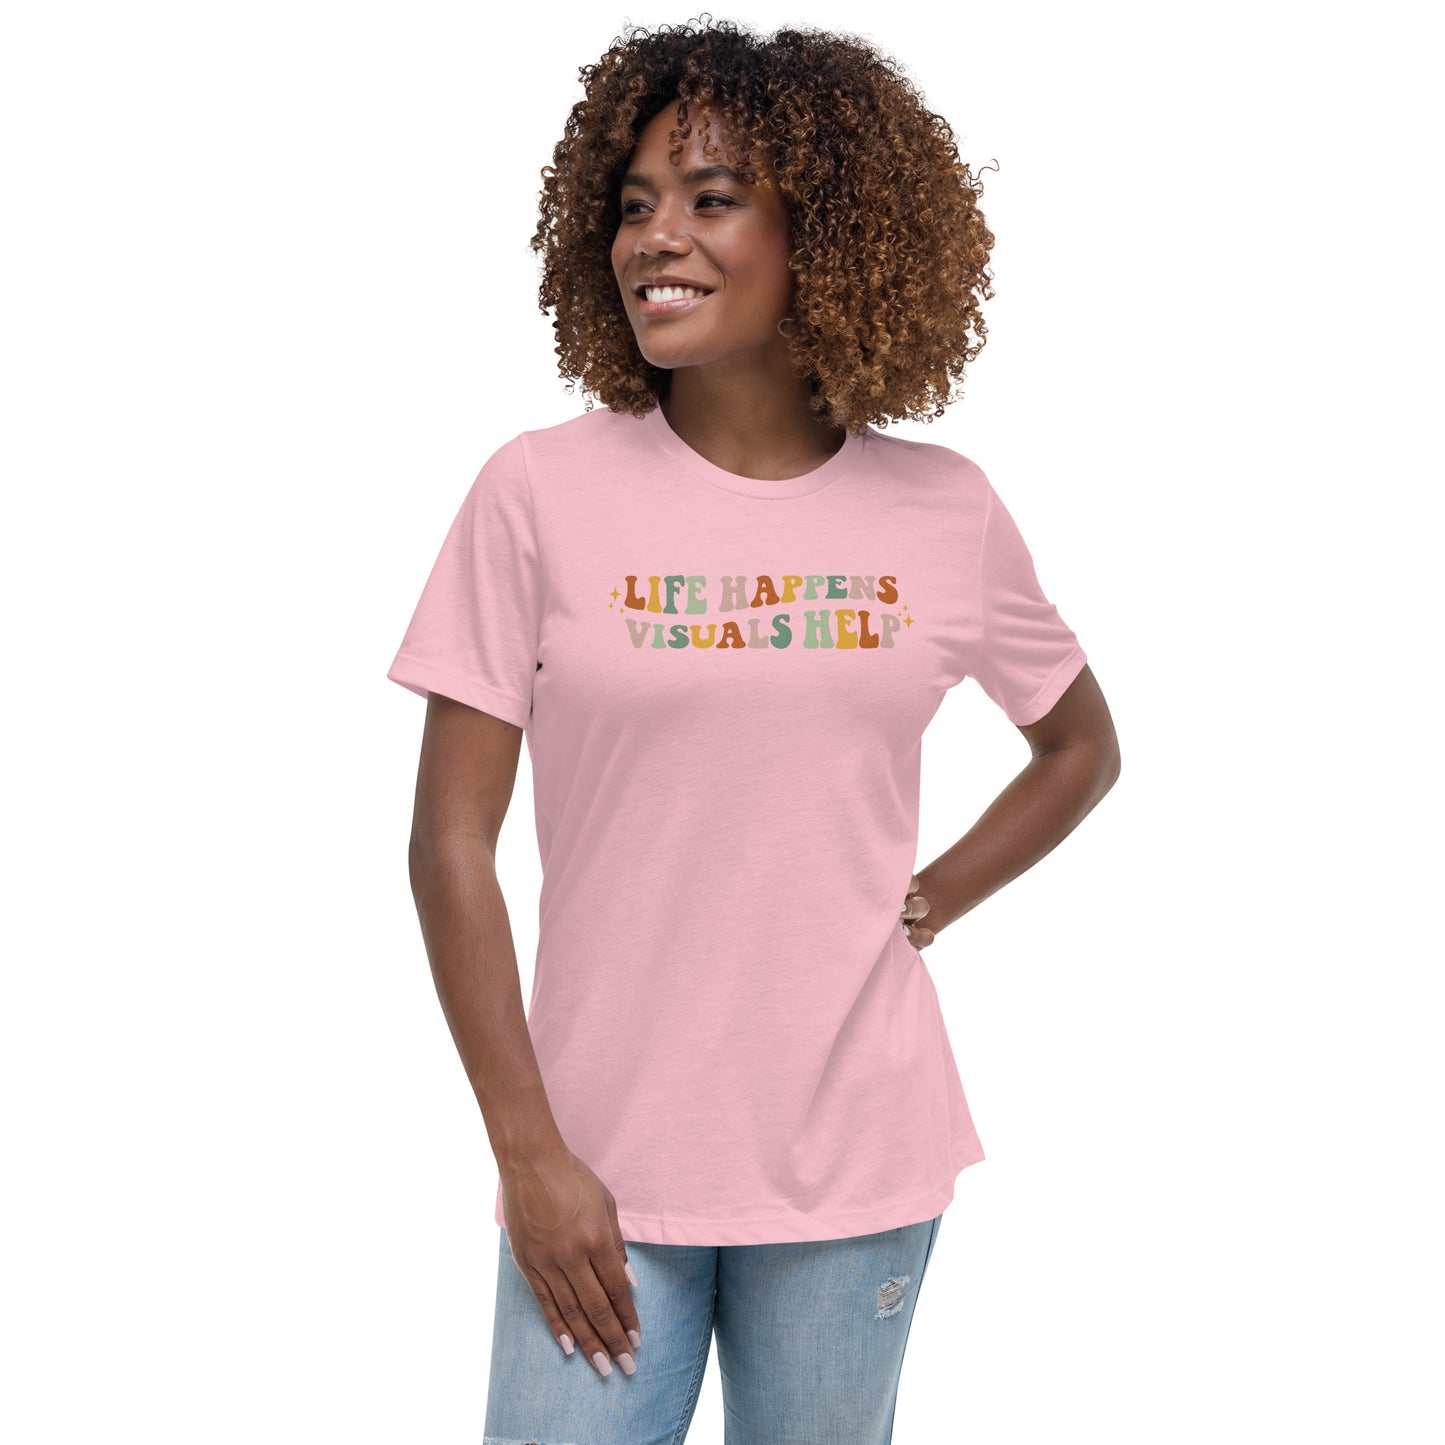 Life Happens, Visuals Help - Women’s T-shirt